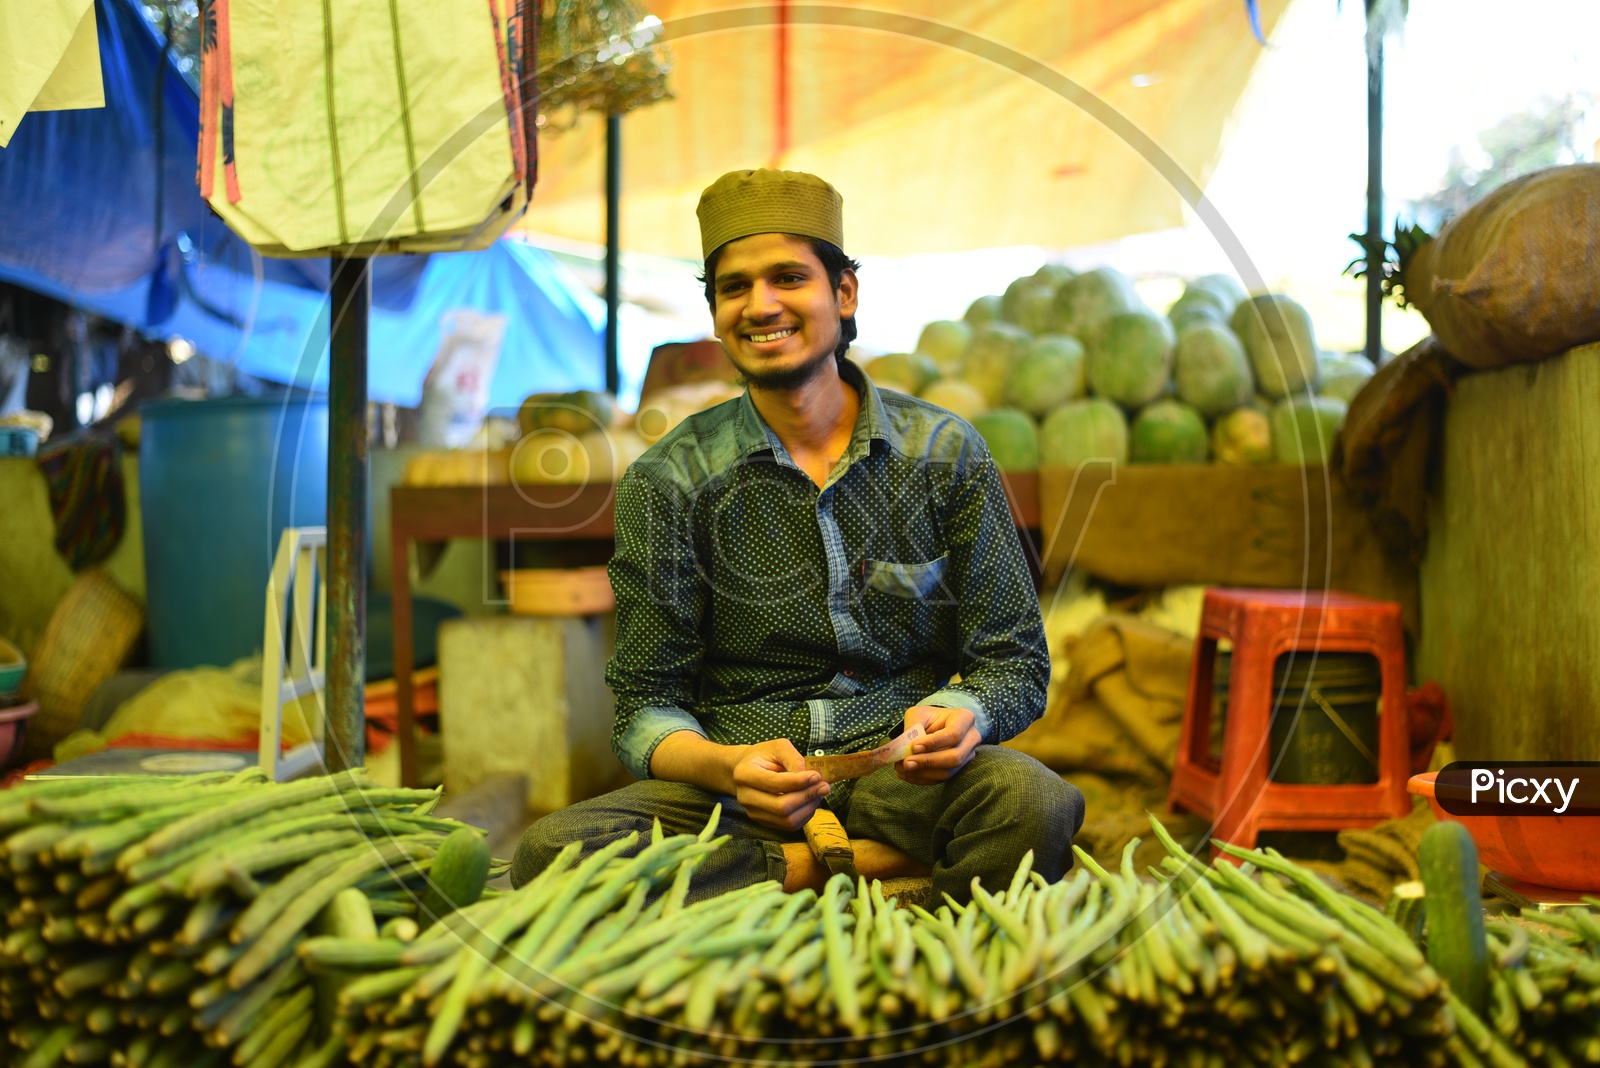 Drumsticks Seller at Local Vegetable Market/Rythu Bazar